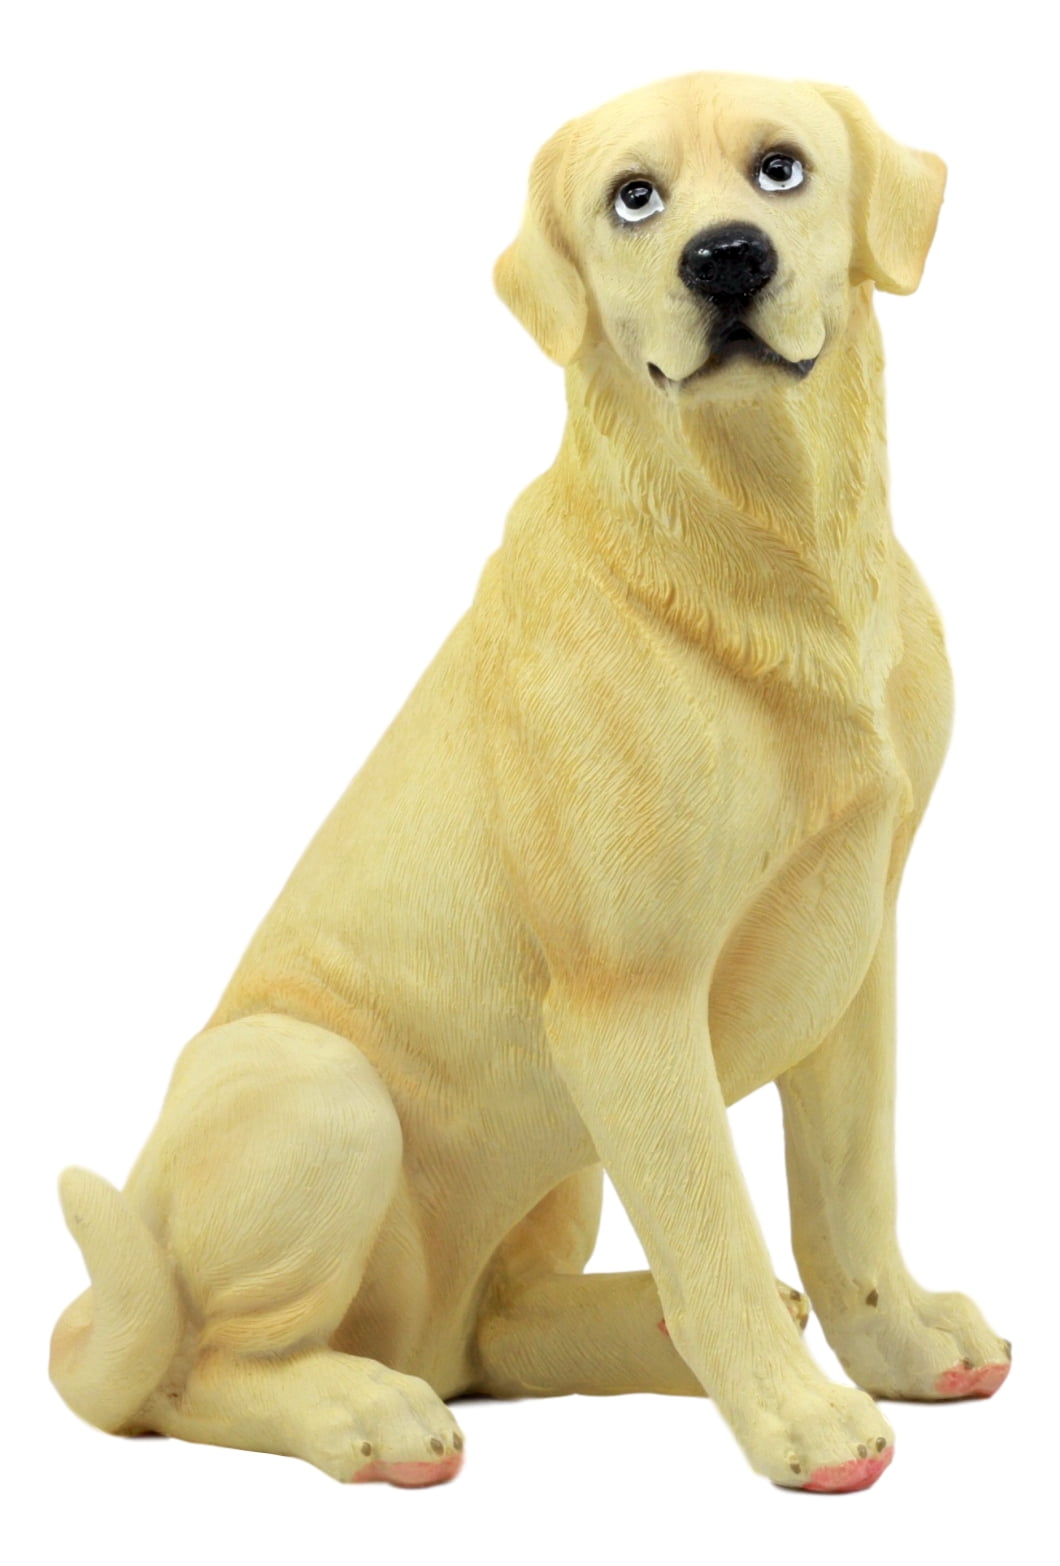 Ebros Sitting Adorable Yellow Labrador Retriever Statue 8 5 H Golden Retriever Dog Welcome Home Decor Sculpture Walmart Com Walmart Com